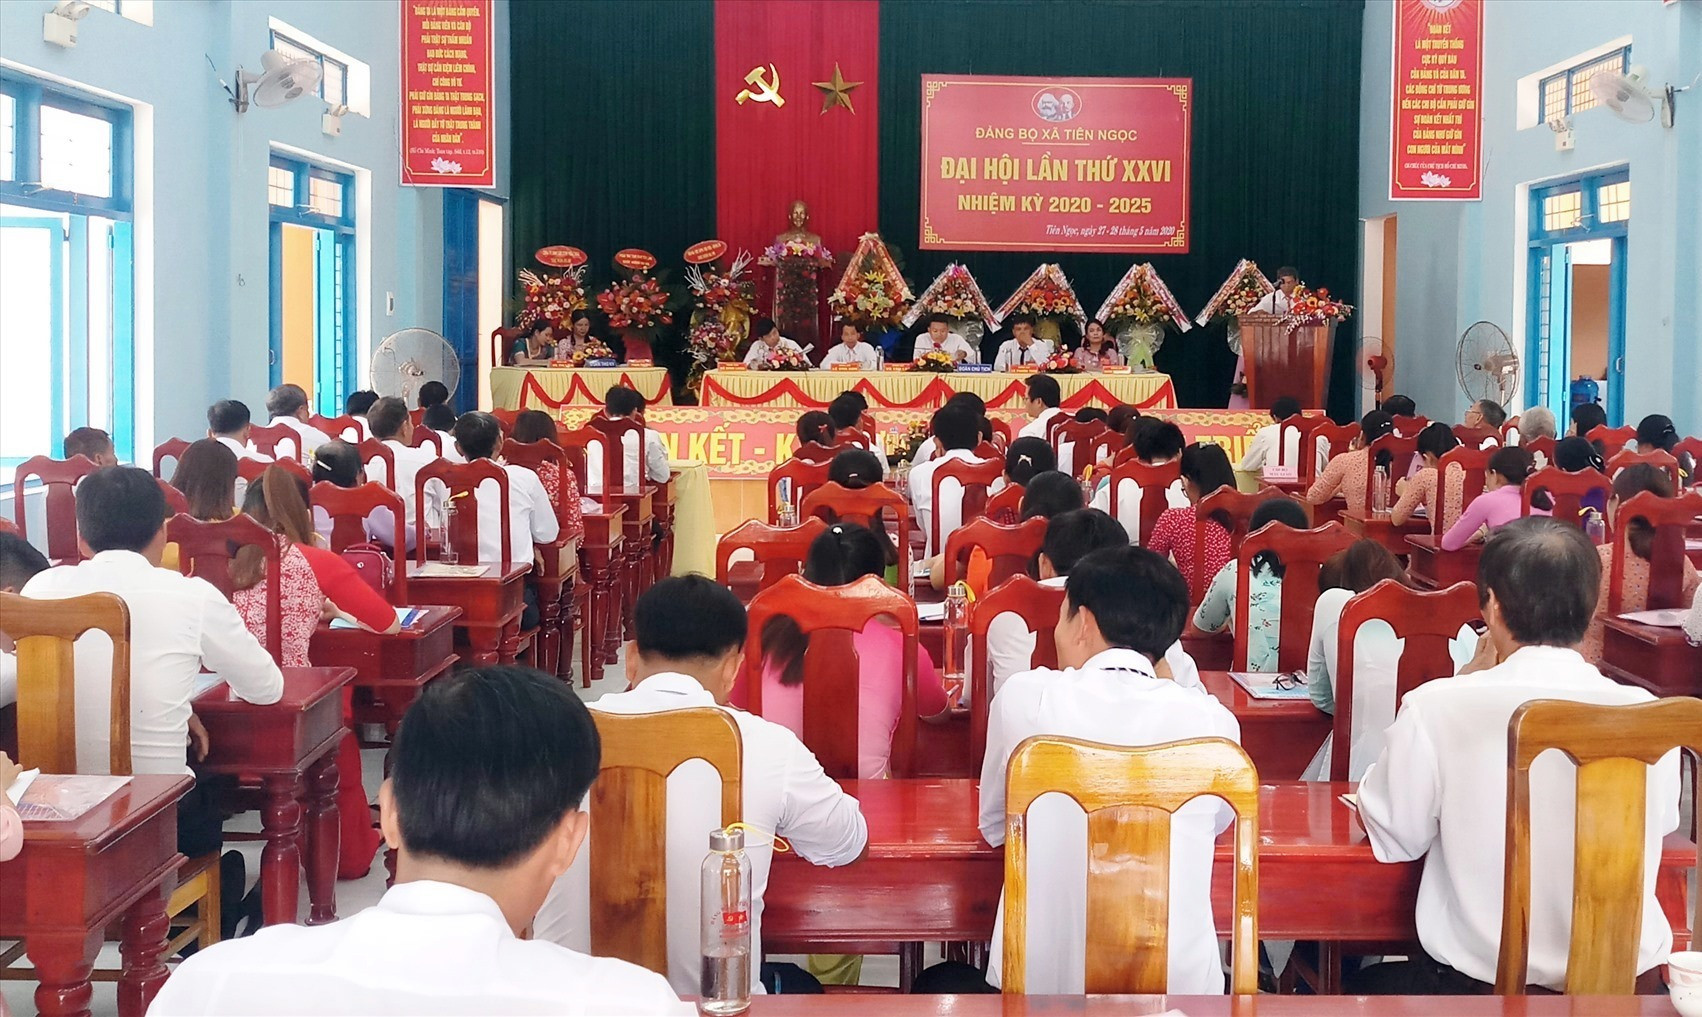 Đảng bộ xã Tiên Ngọc (Tiên Phước) tổ chức Đại hội lần thứ XXVI, nhiệm kỳ 2020 - 2025